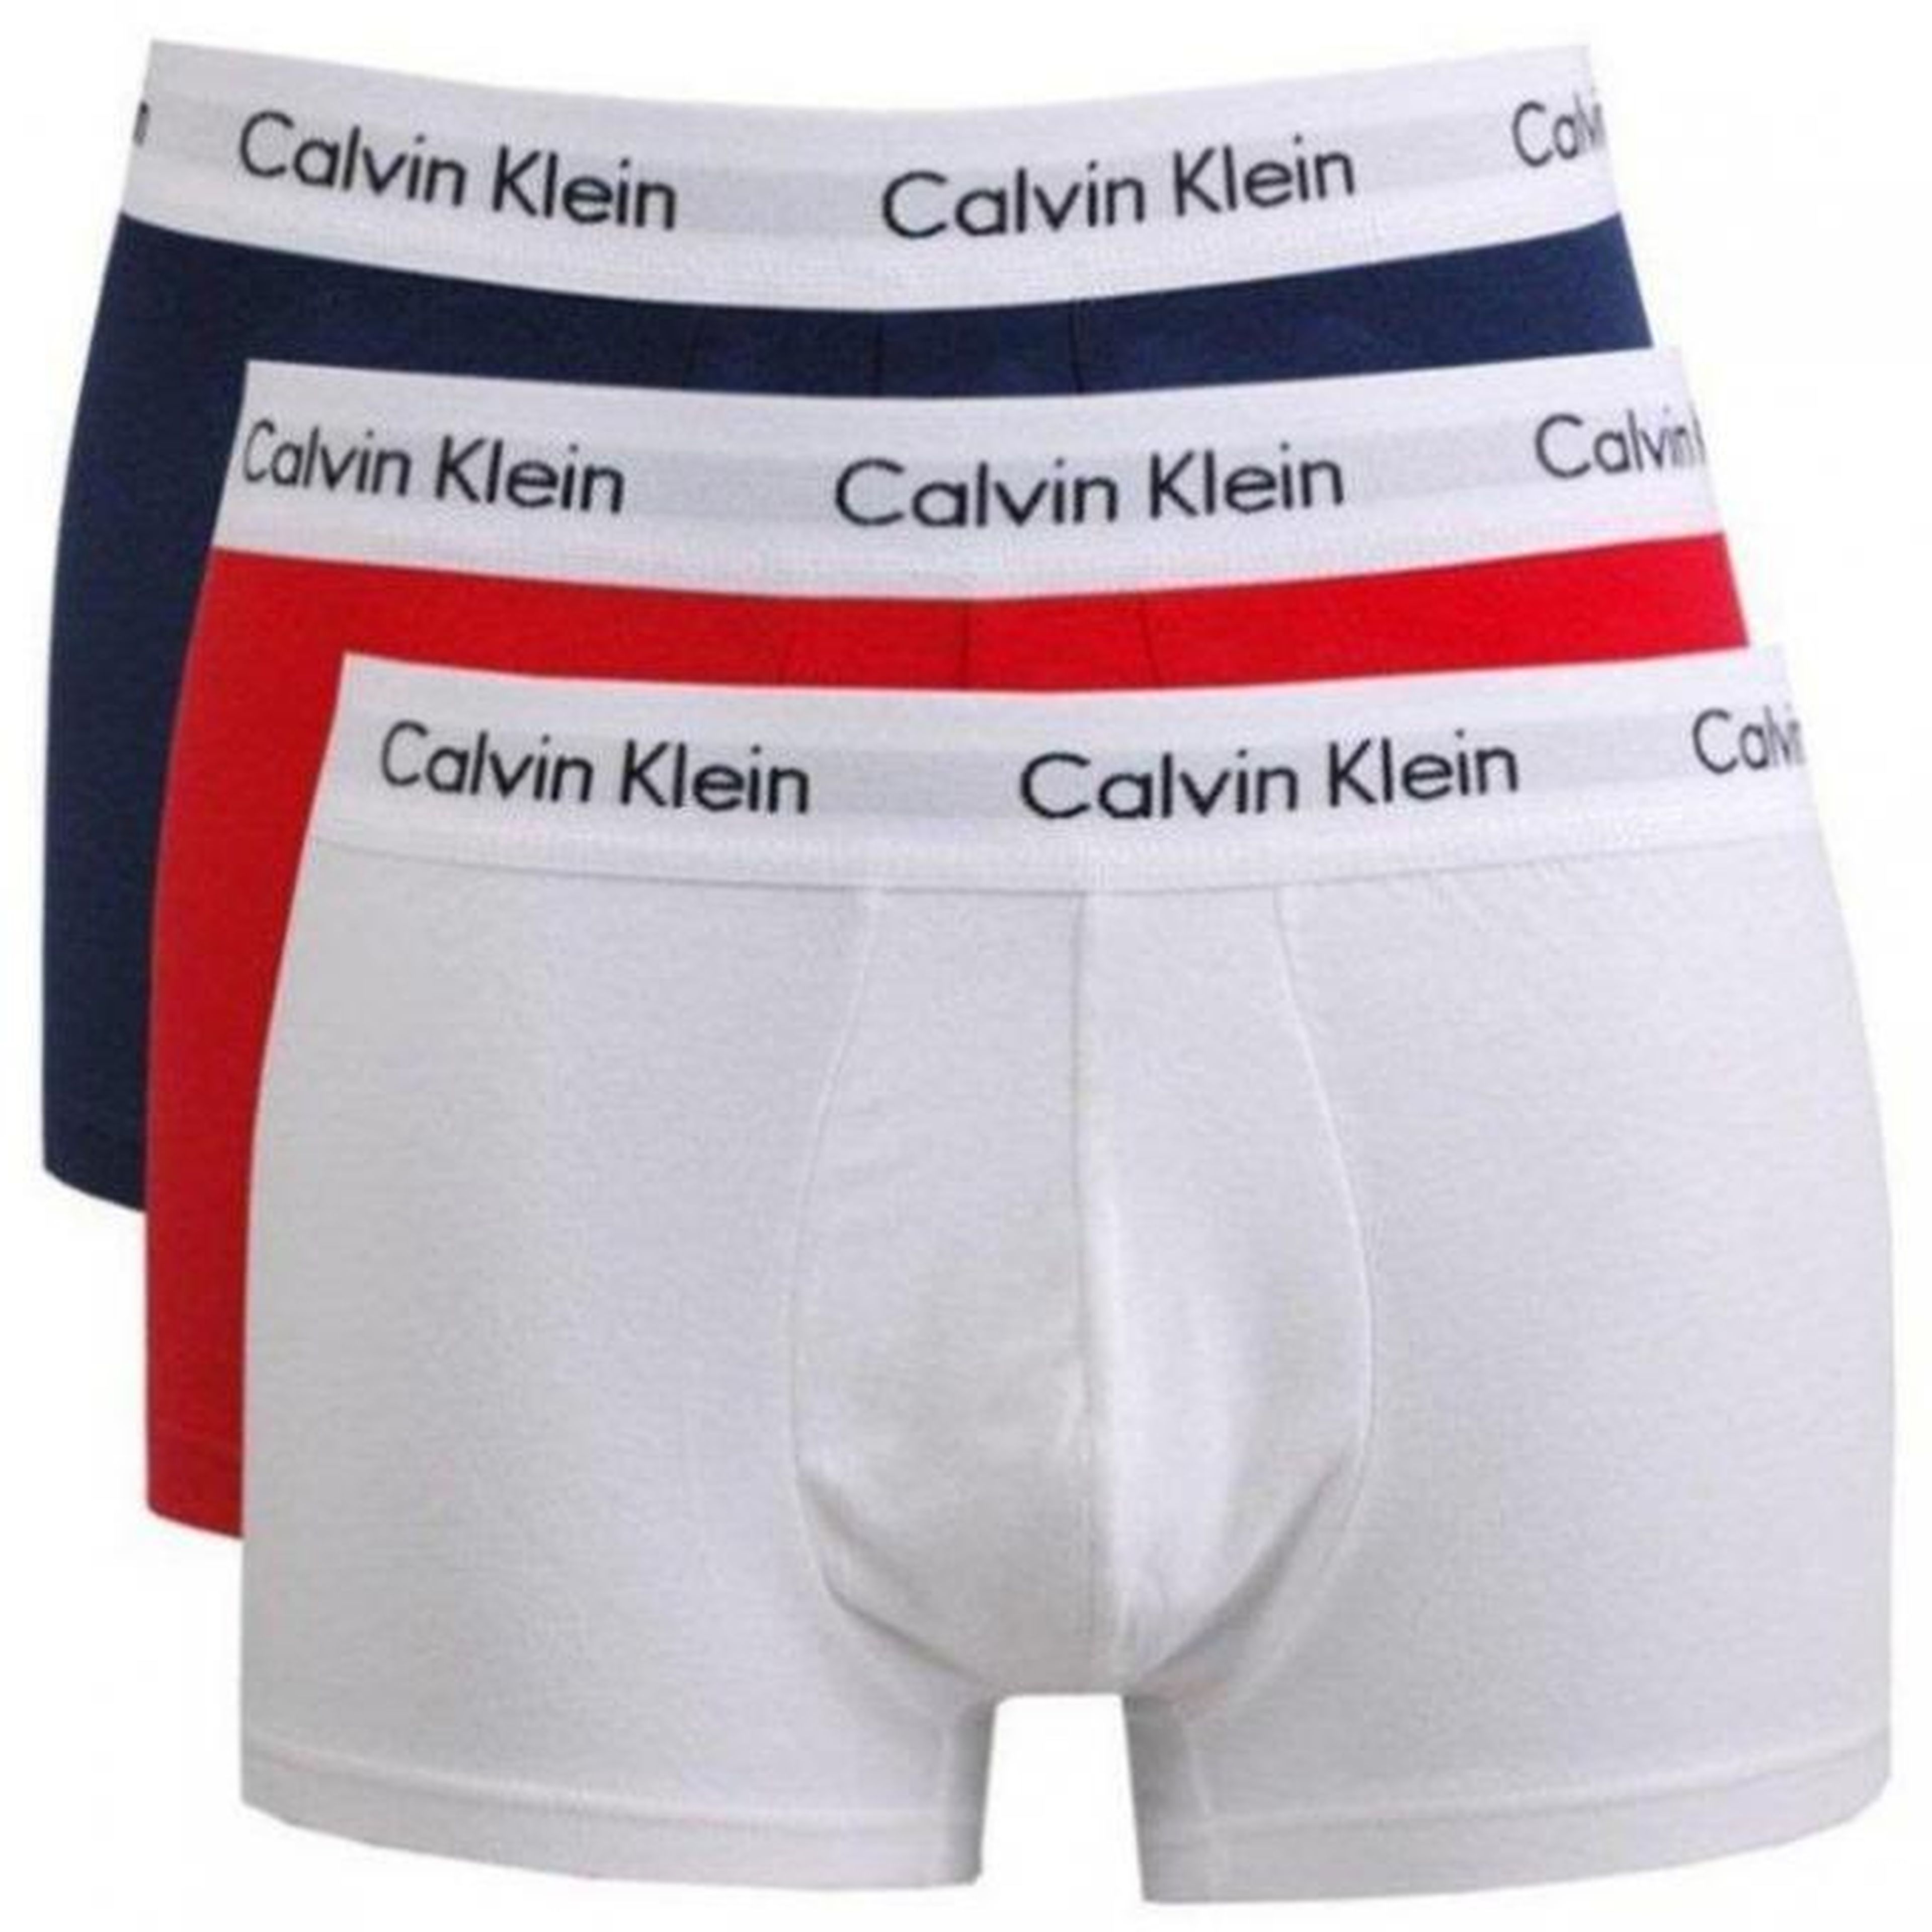 amazon fashion calzoncillos Calvin Klein